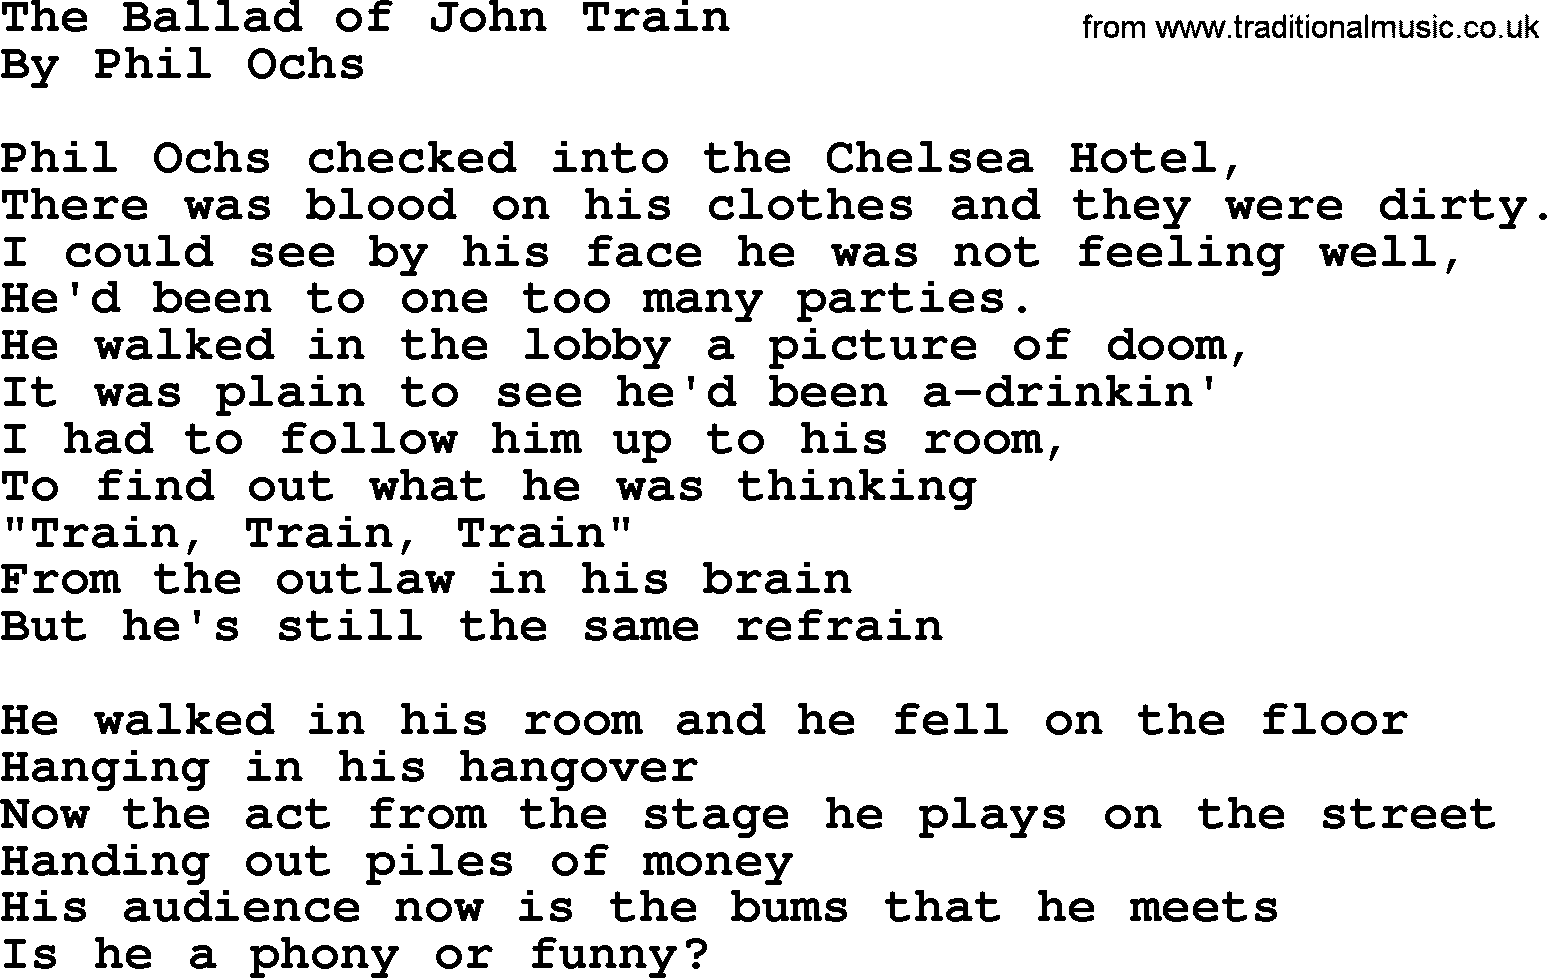 Phil Ochs song The Ballad Of John Train, lyrics